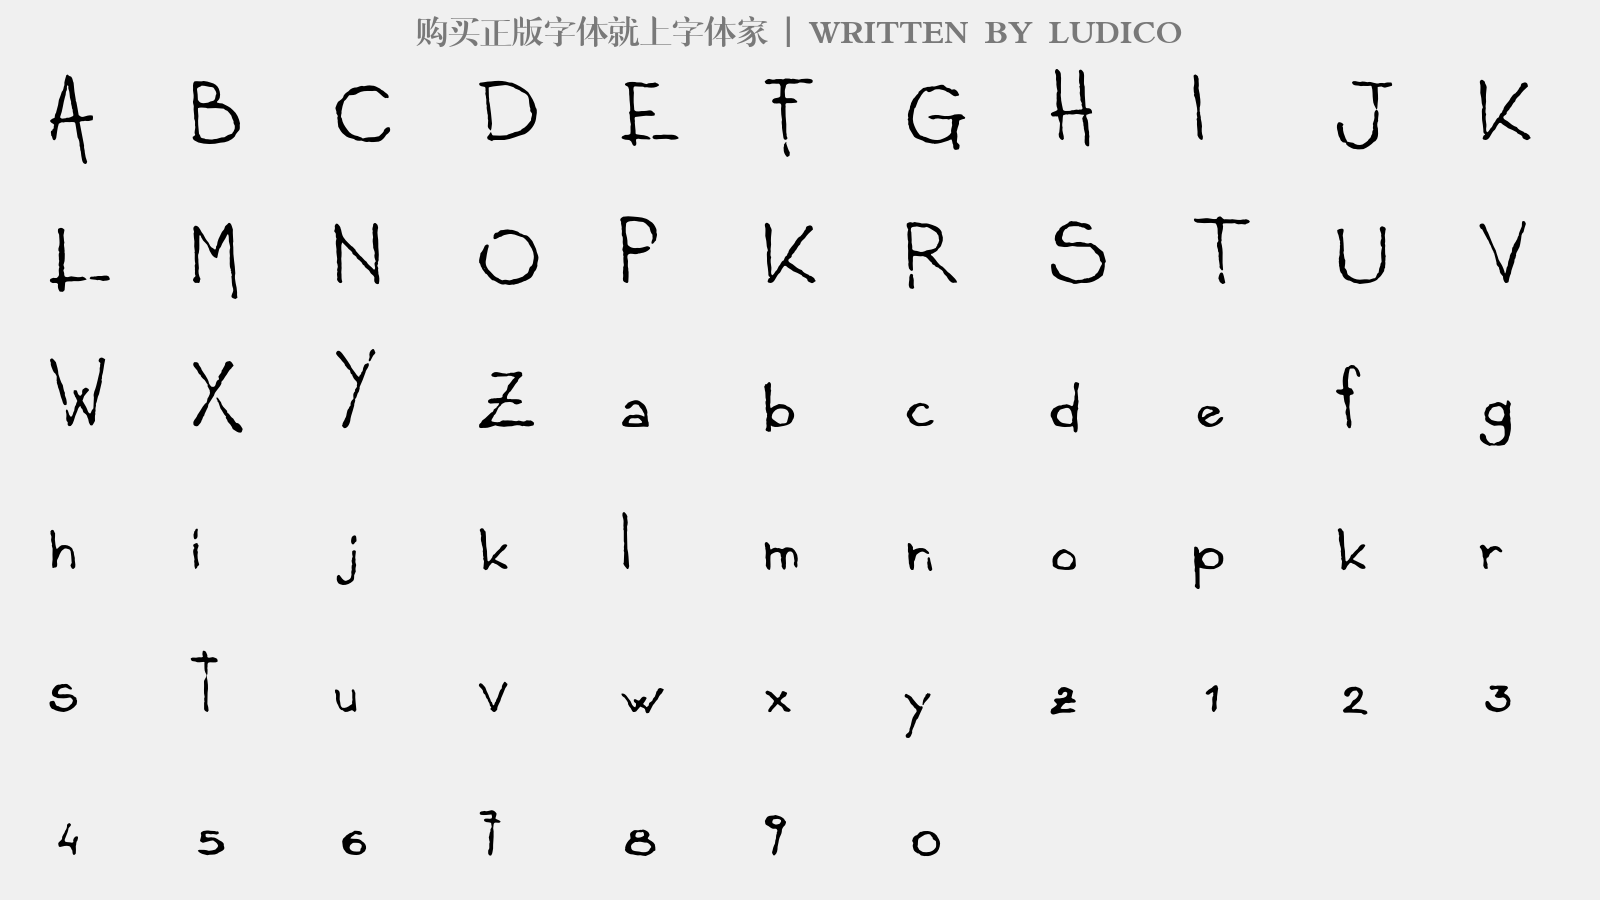 LUDICO - 大写字母/小写字母/数字